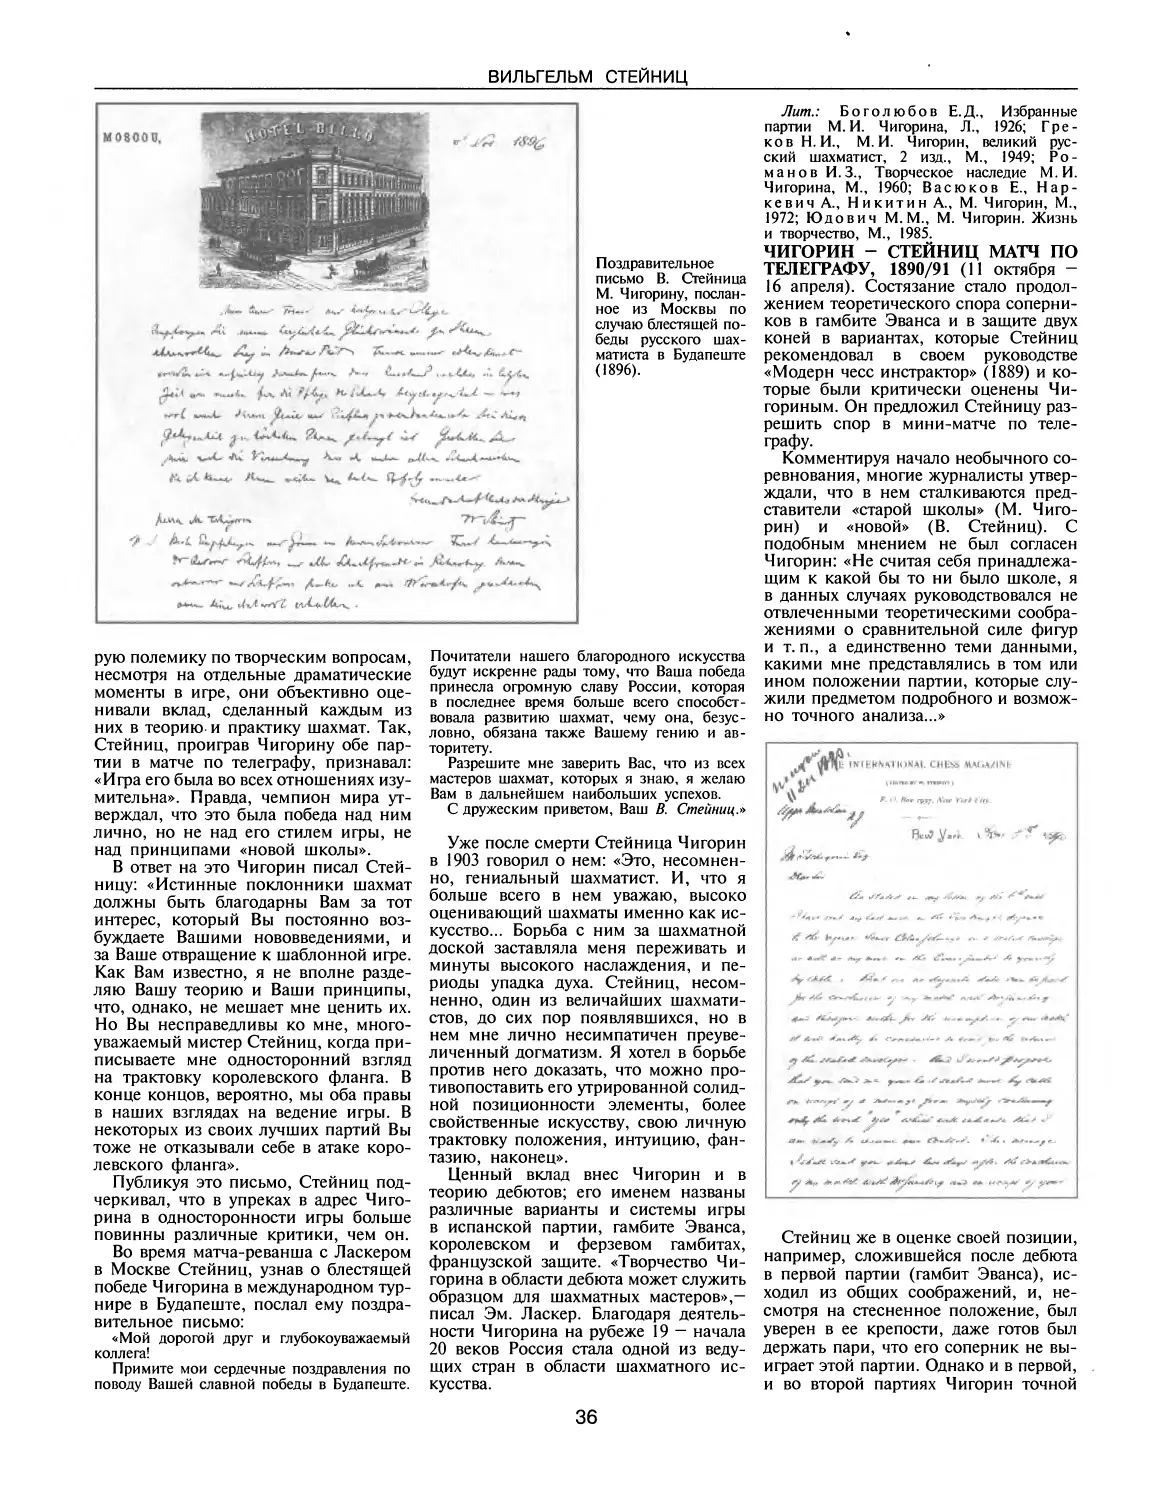 Чигорин — Стейниц матч по телеграфу, 1890-91